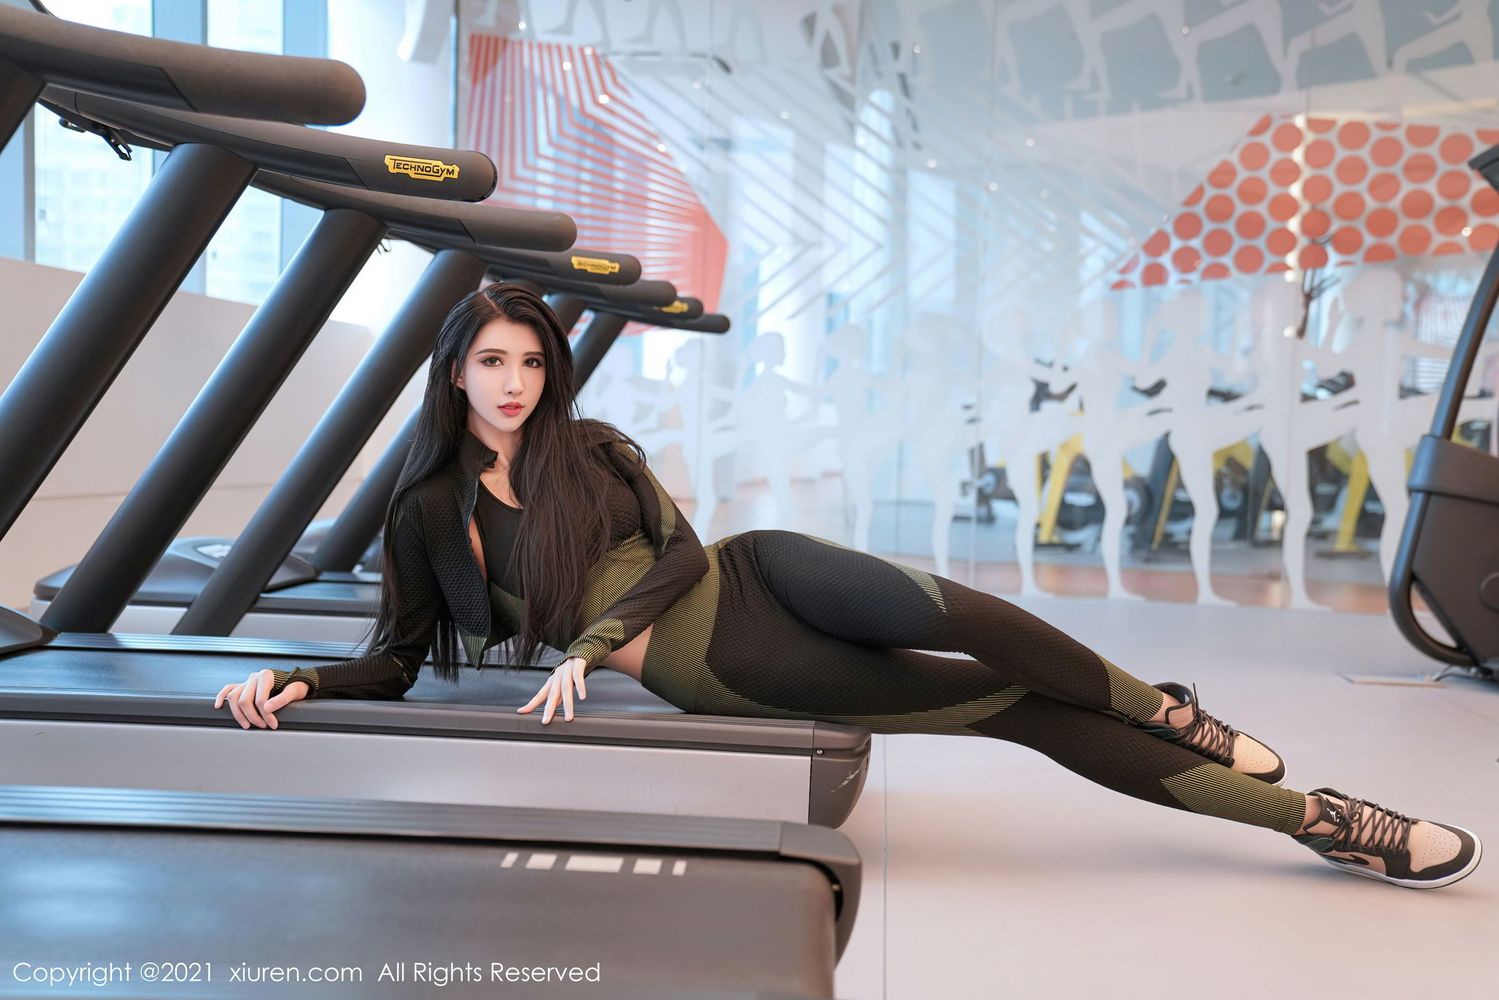 美女模特葛征Model紧身运动装+健身房主题性感写真